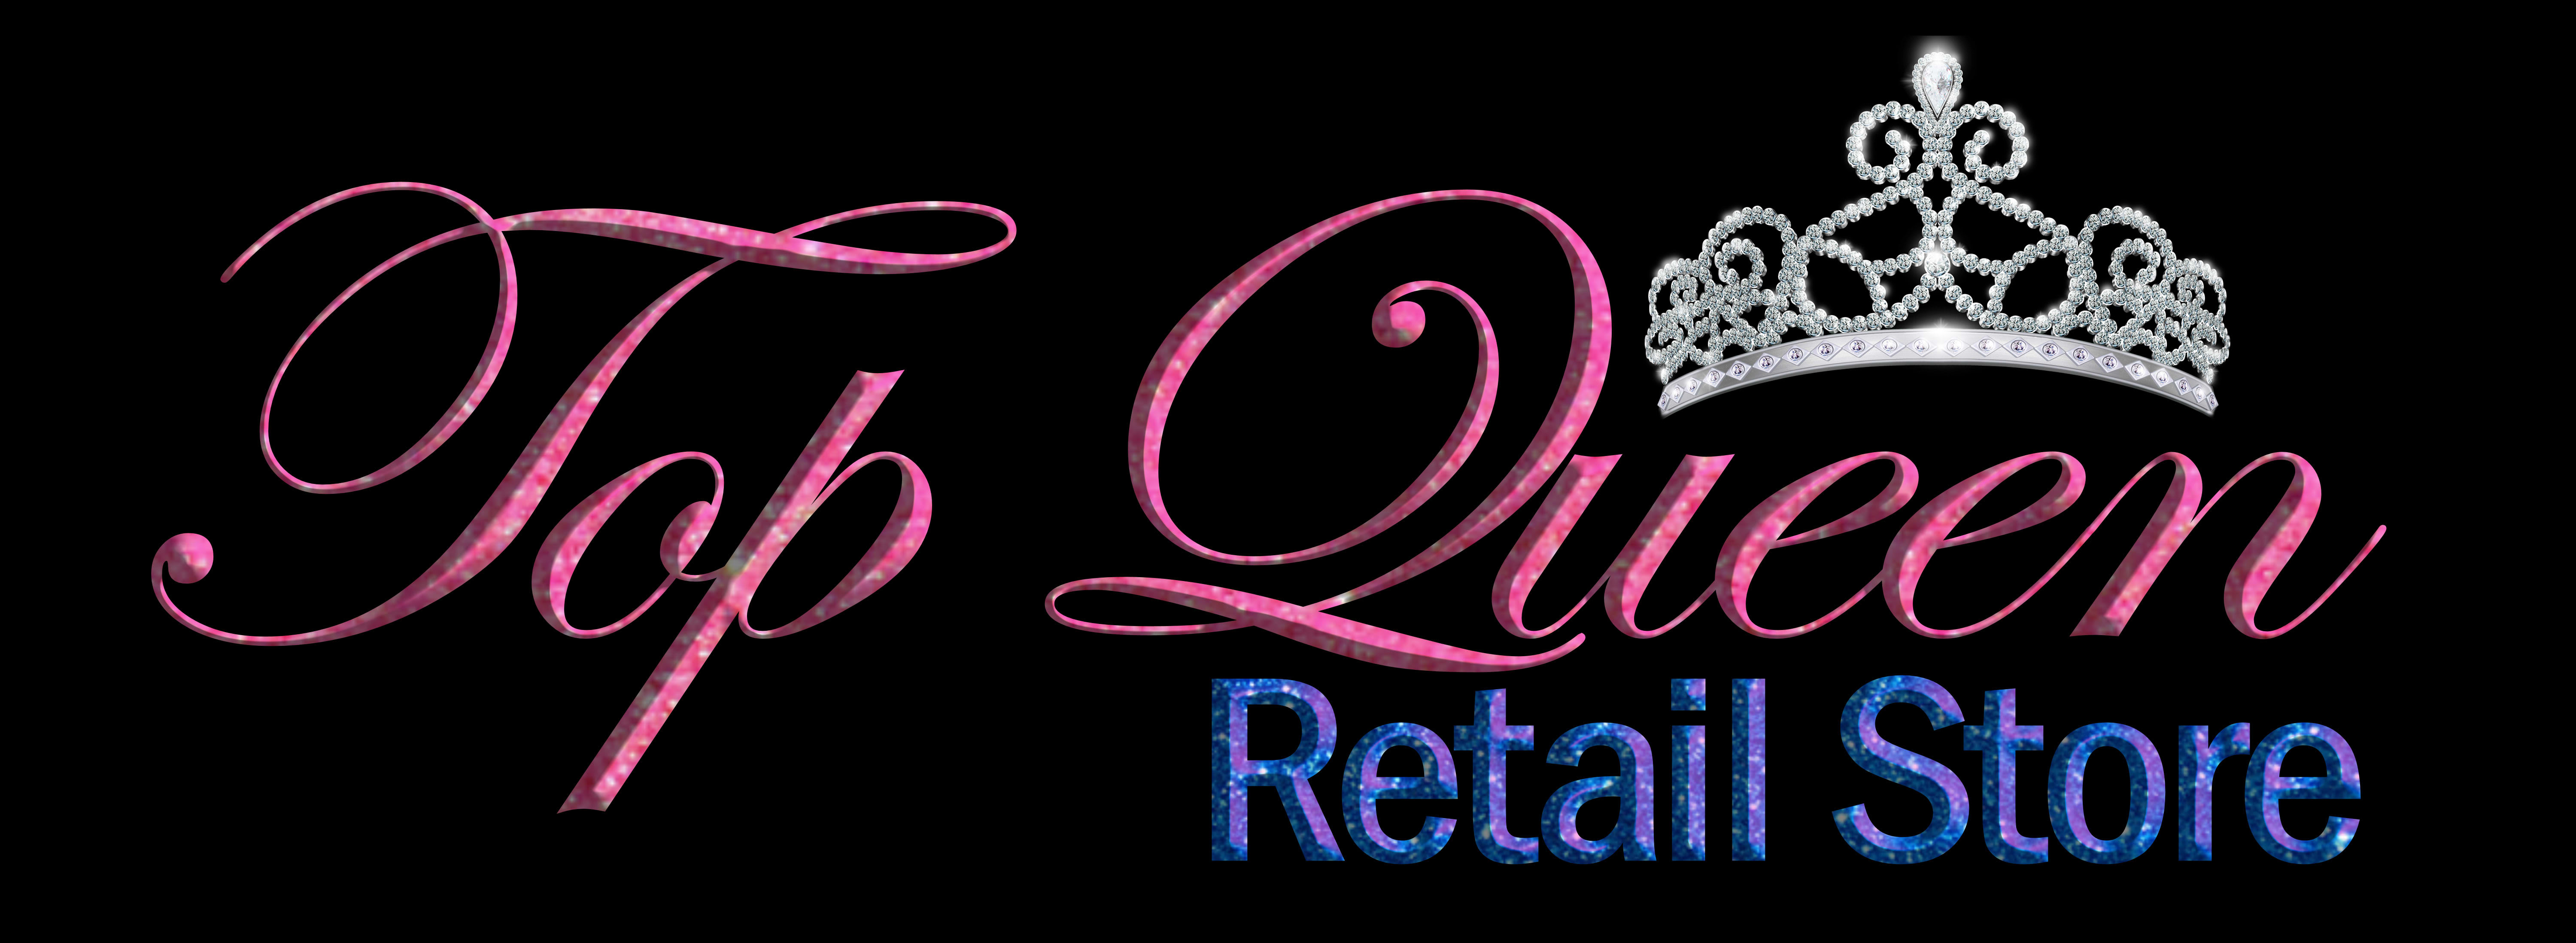 Top Queen Retail Store LLC